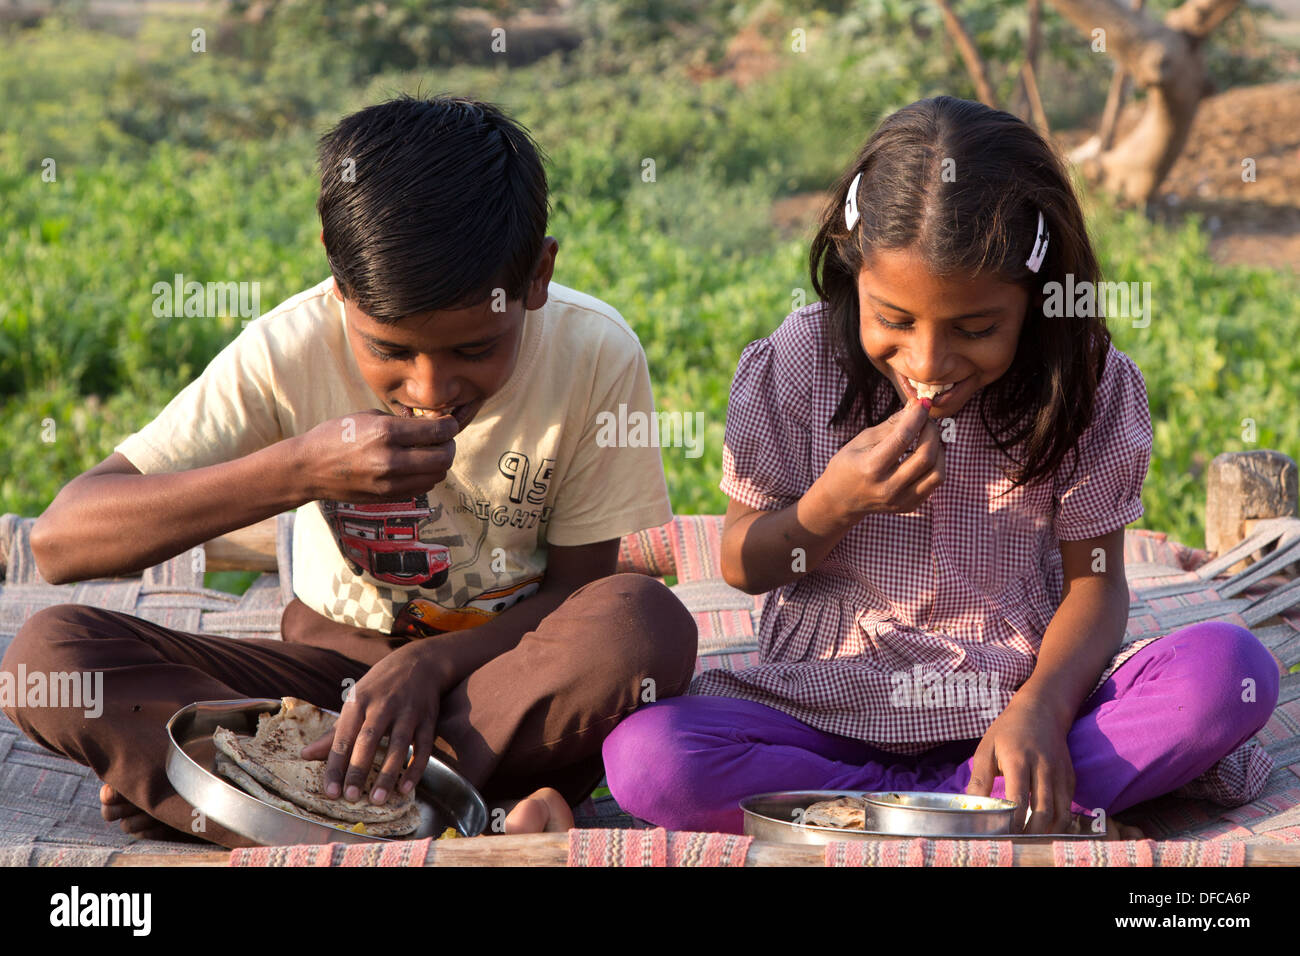 L'Inde, Uttar Pradesh, Agra, frère et soeur de manger le petit déjeuner traditionnel indien de roti et pommes de terre, curry (aloo ghobi) Banque D'Images